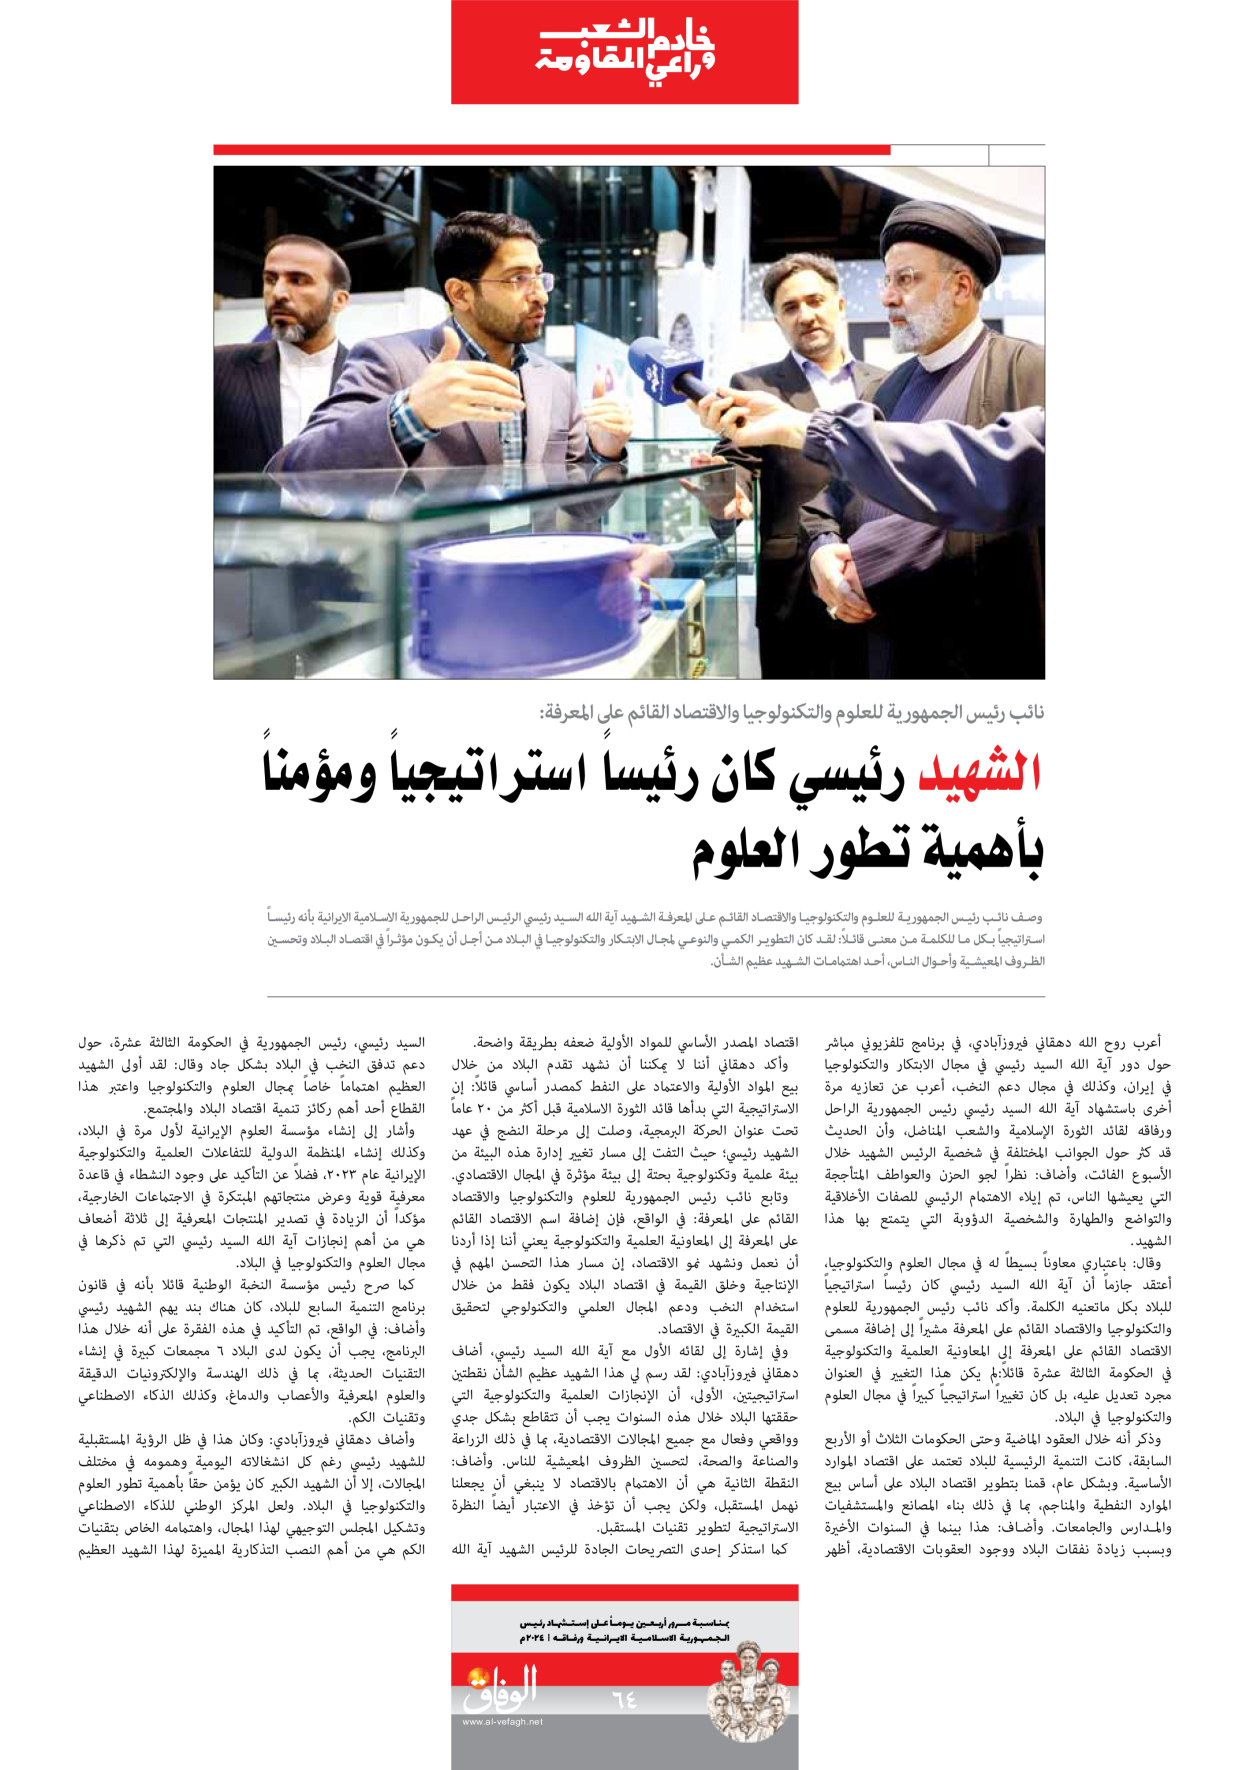 صحیفة ایران الدولیة الوفاق - ملحق ویژه نامه چهلم شهید رییسی - ٢٩ يونيو ٢٠٢٤ - الصفحة ٦٤